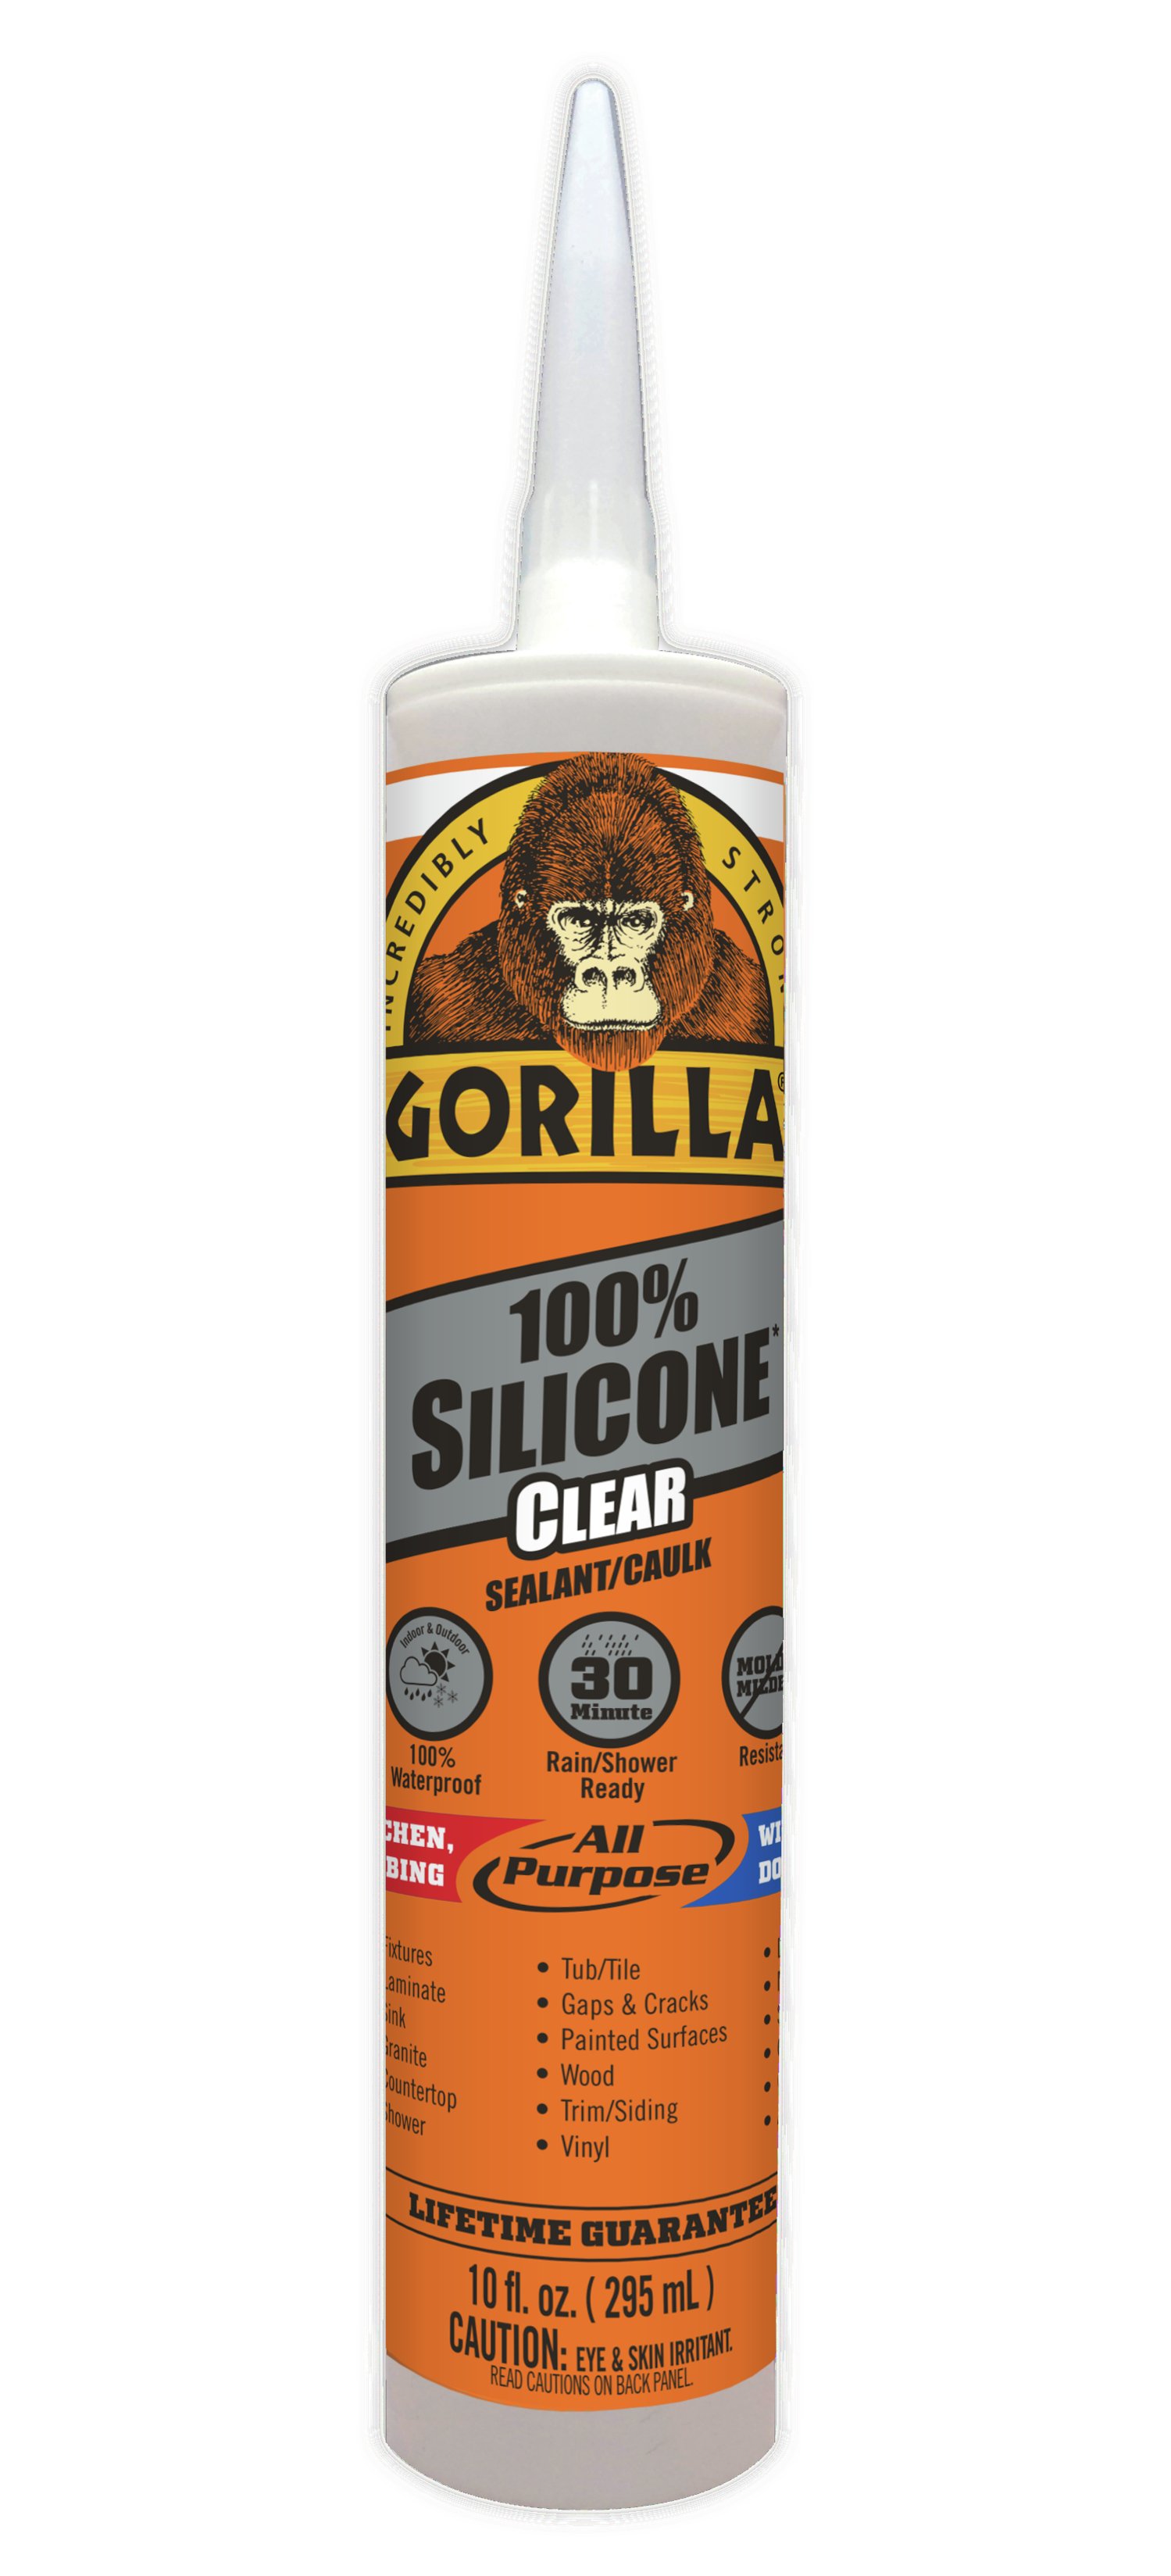 Gorilla 100% Silicone Clear Sealant - Shop Home Improvement at H-E-B